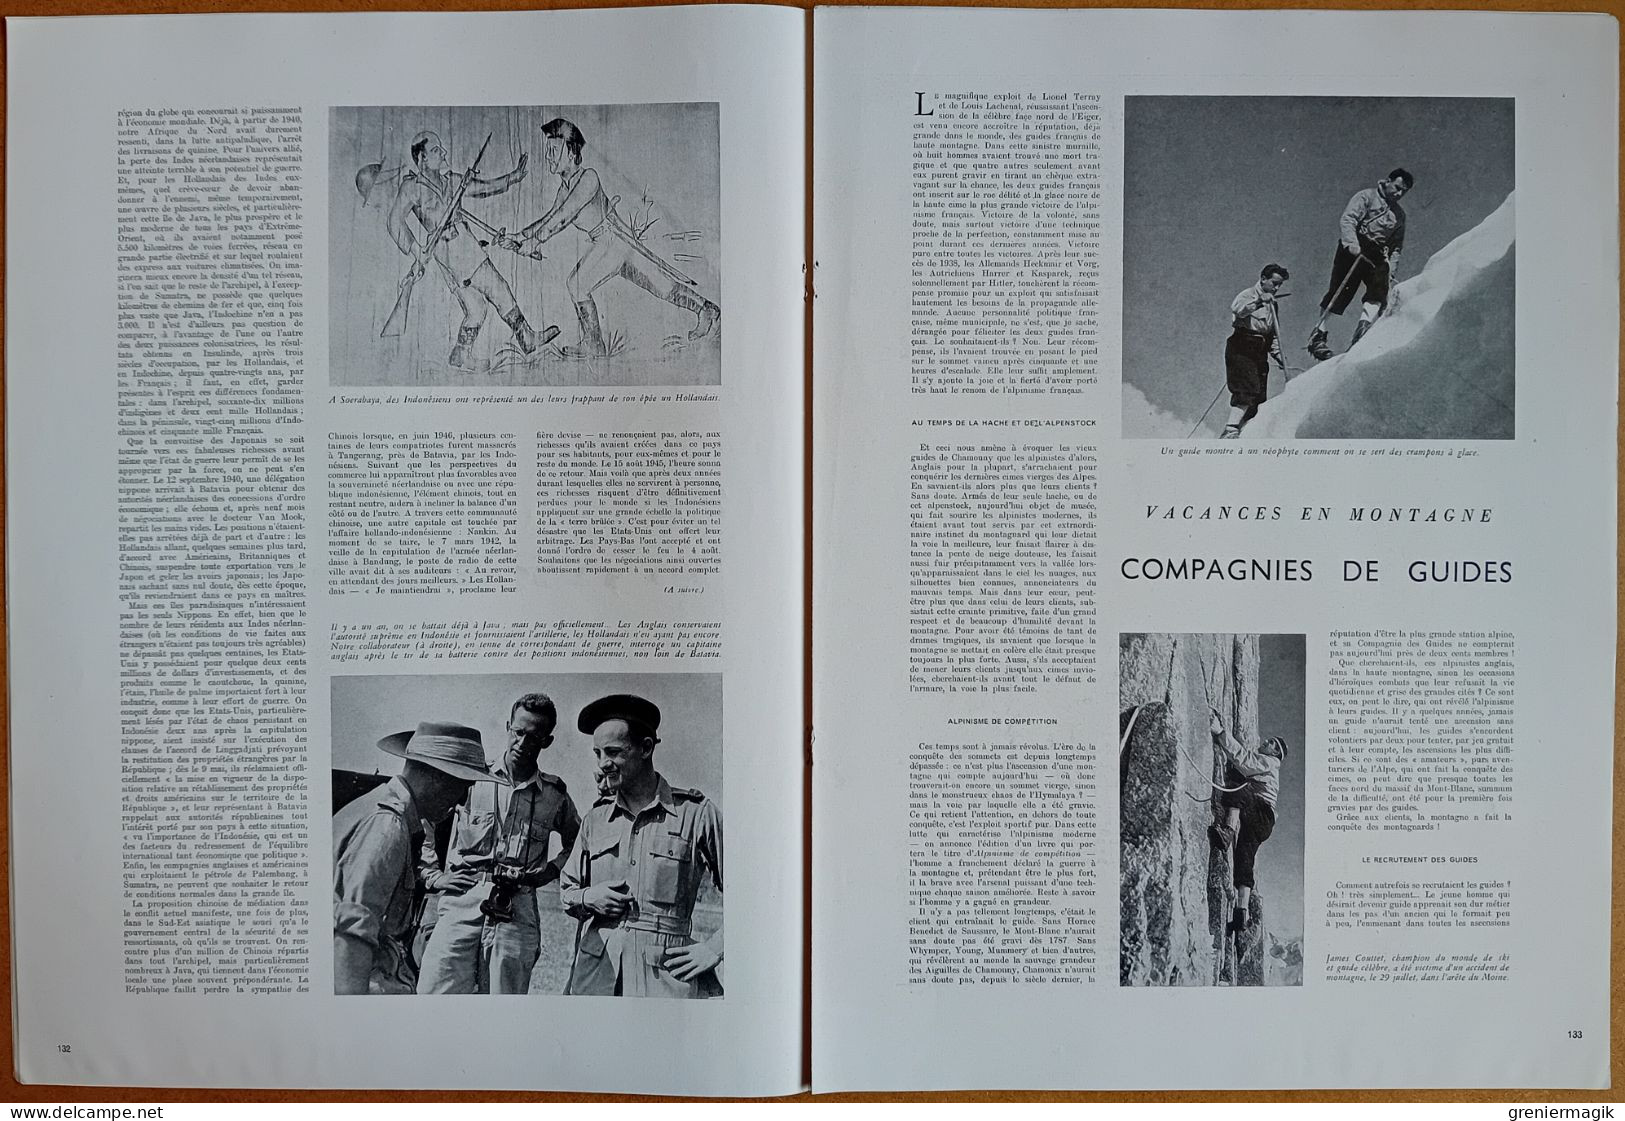 France Illustration N°97 09/08/1947 Catastrophe de Brest/Indonésie/Palestine Exodus-1947/Guides de haute montagne